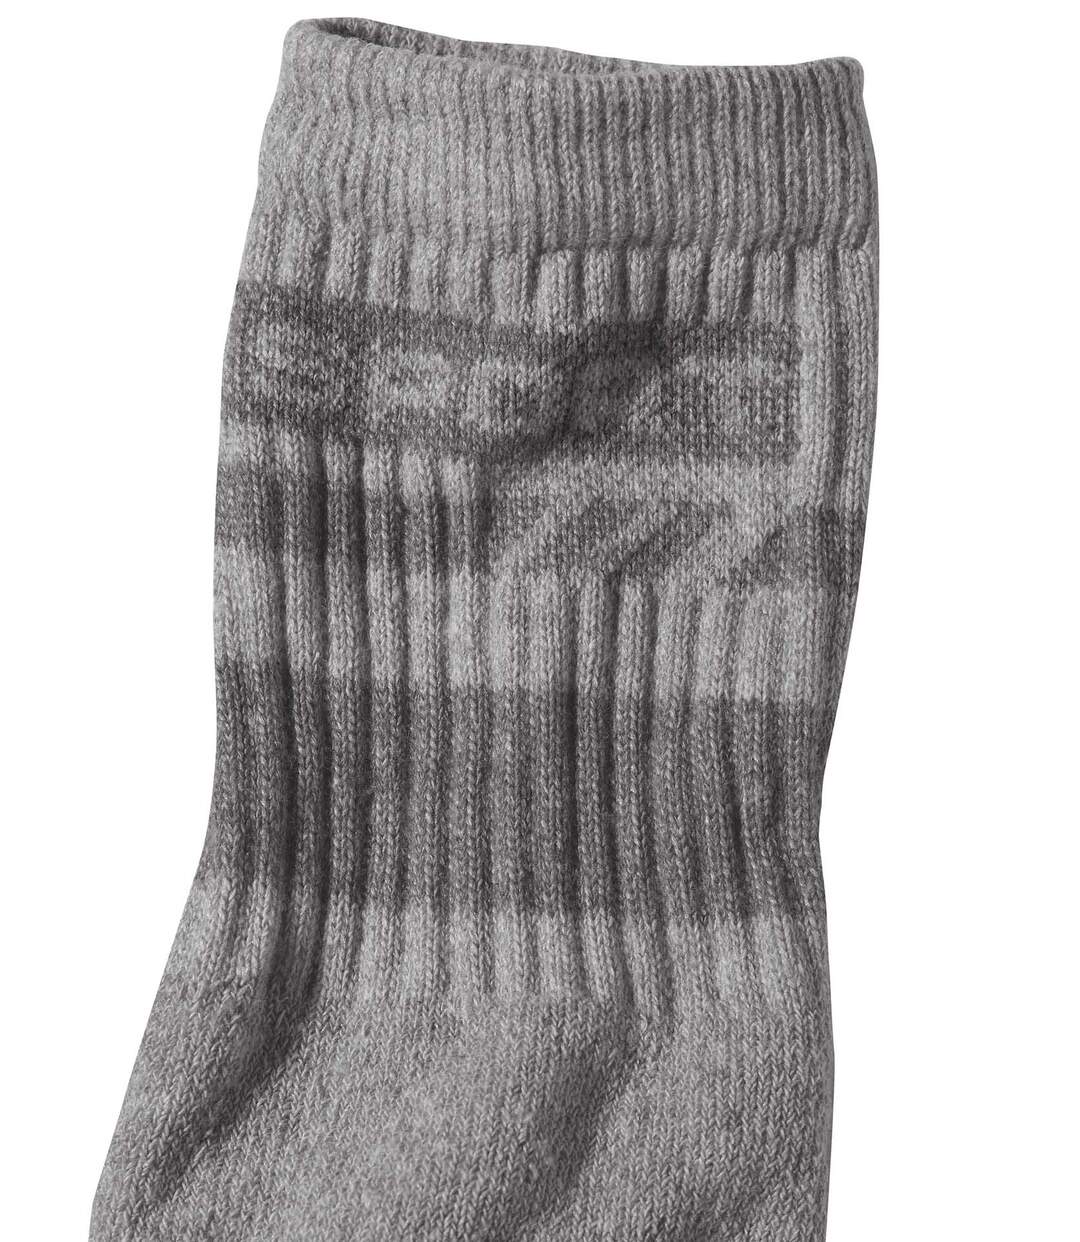 Pack of 4 Pairs of Men's Sports Socks - Burgundy Grey Indigo Atlas For Men